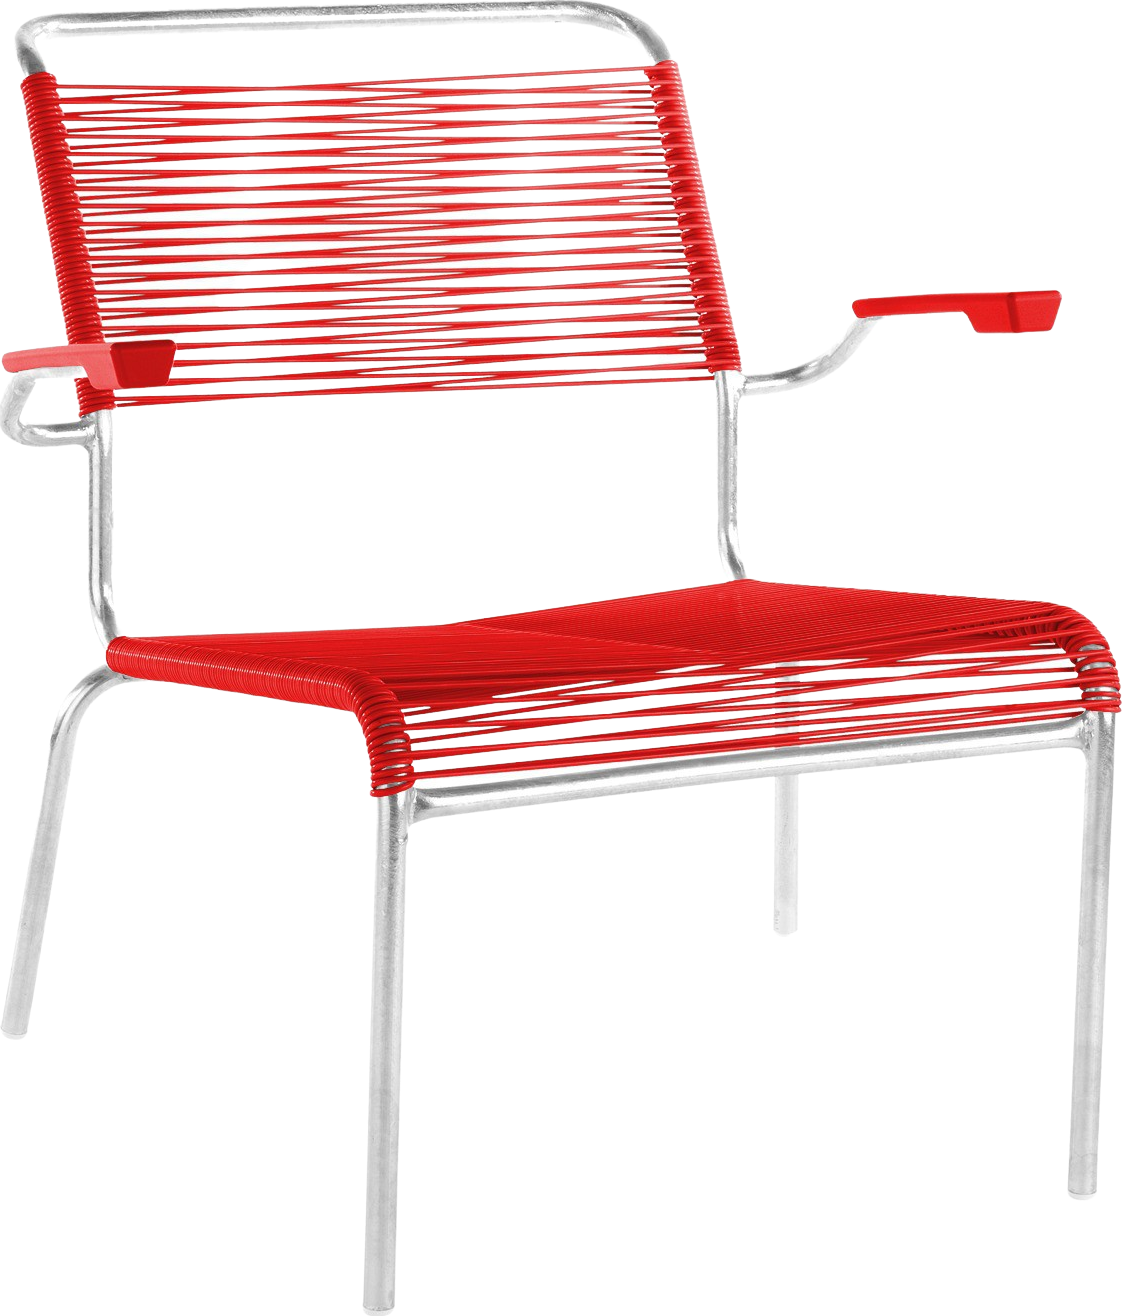 Säntis Lounger Spaghetti mit Armlehne in Rot / Feuerverzinkt präsentiert im Onlineshop von KAQTU Design AG. Outdoor-Sessel ist von Schaffner